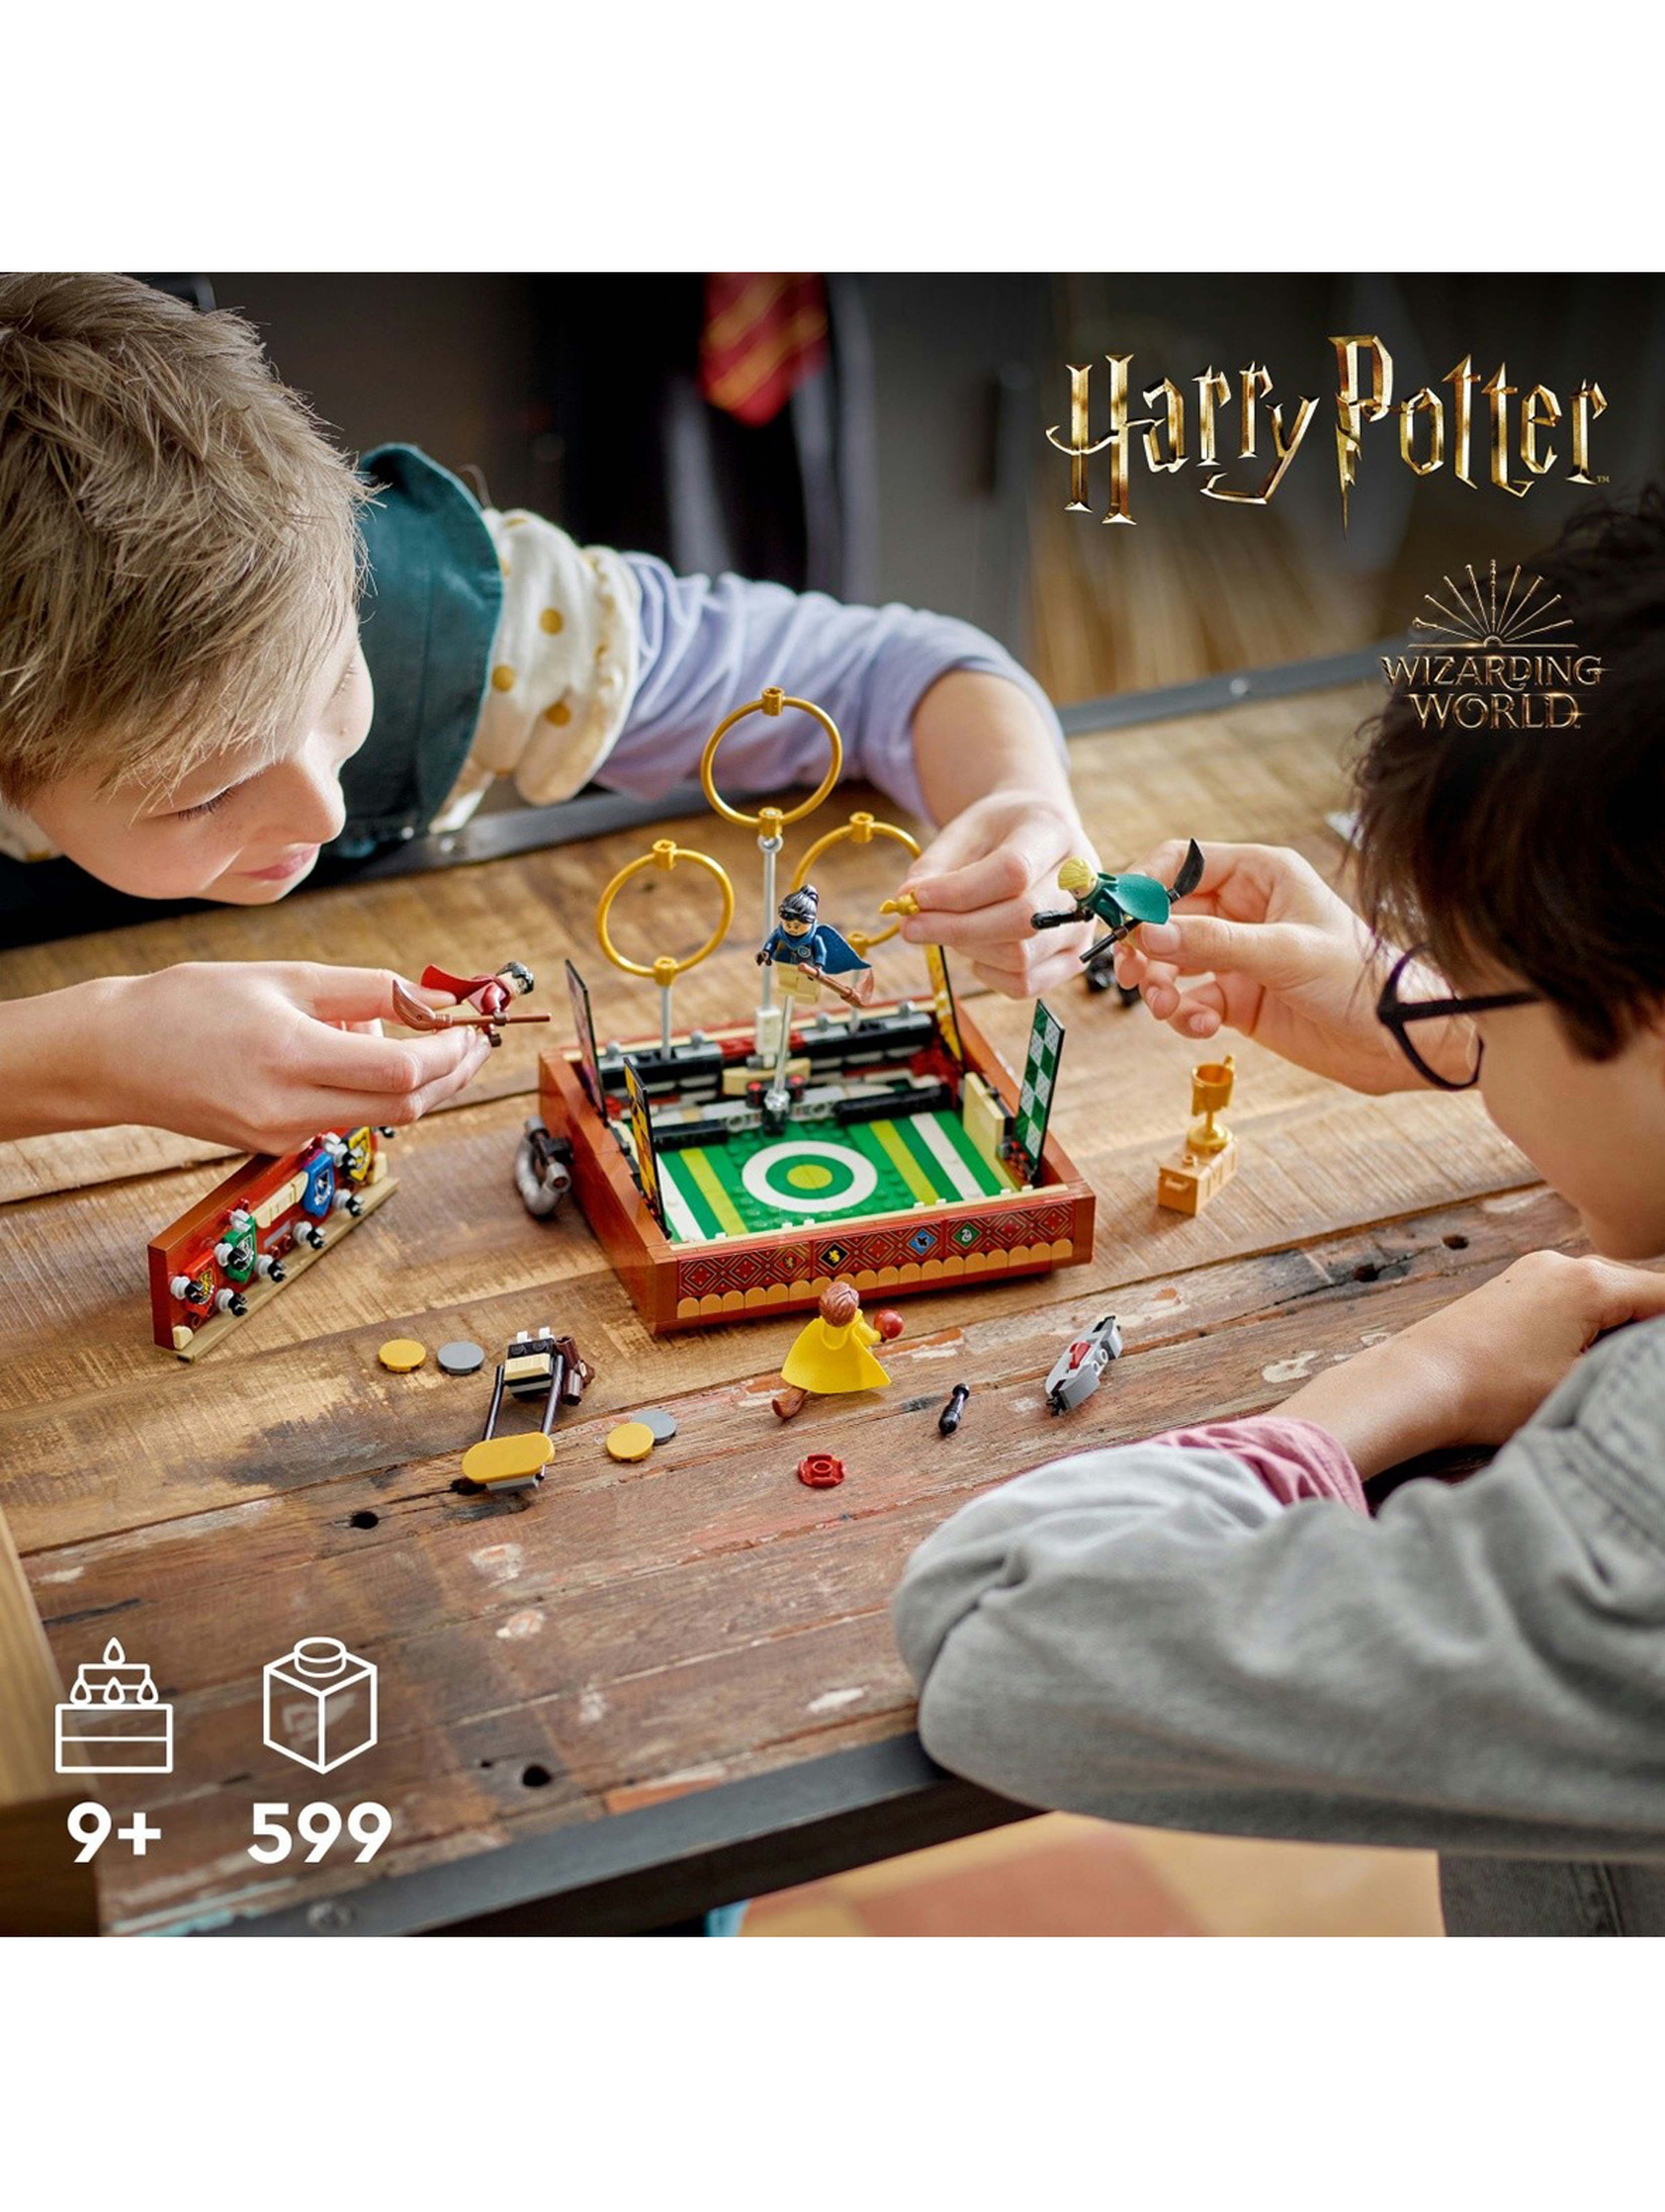 Klocki LEGO Harry Potter 76416 Quidditch-kufer - 599 elementów, wiek 9 +